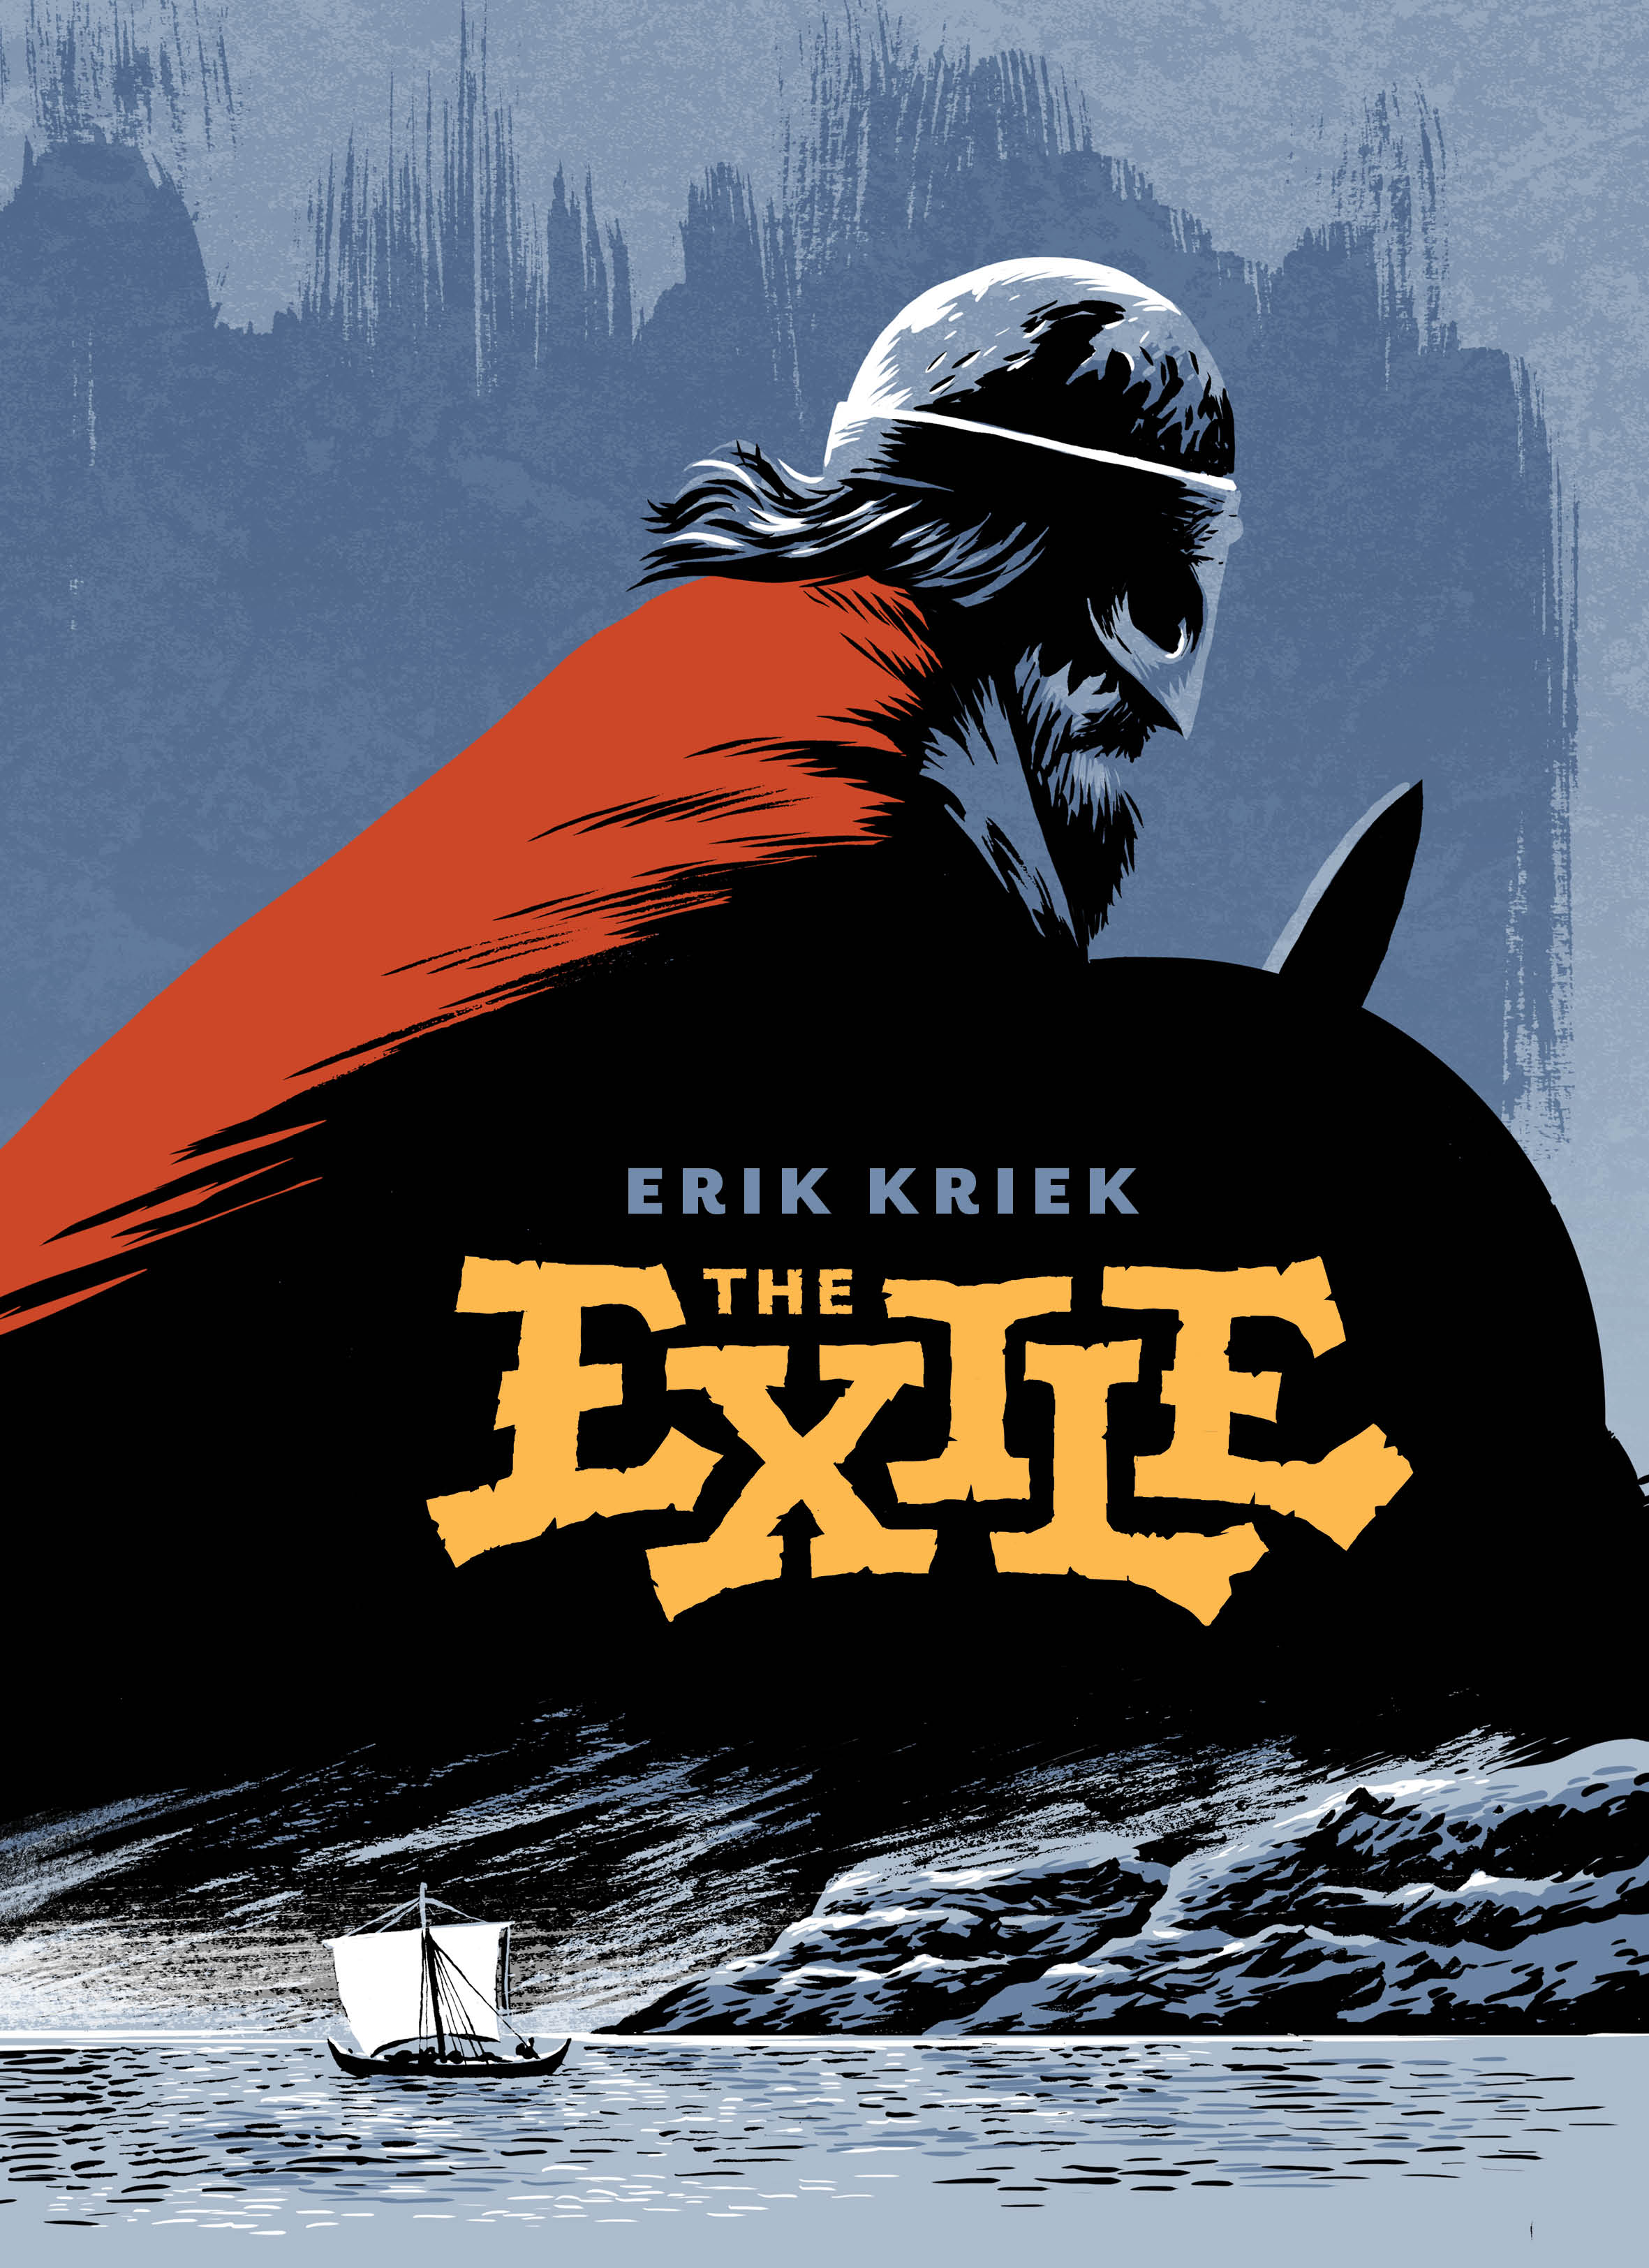 The Exile by Erik Kriek